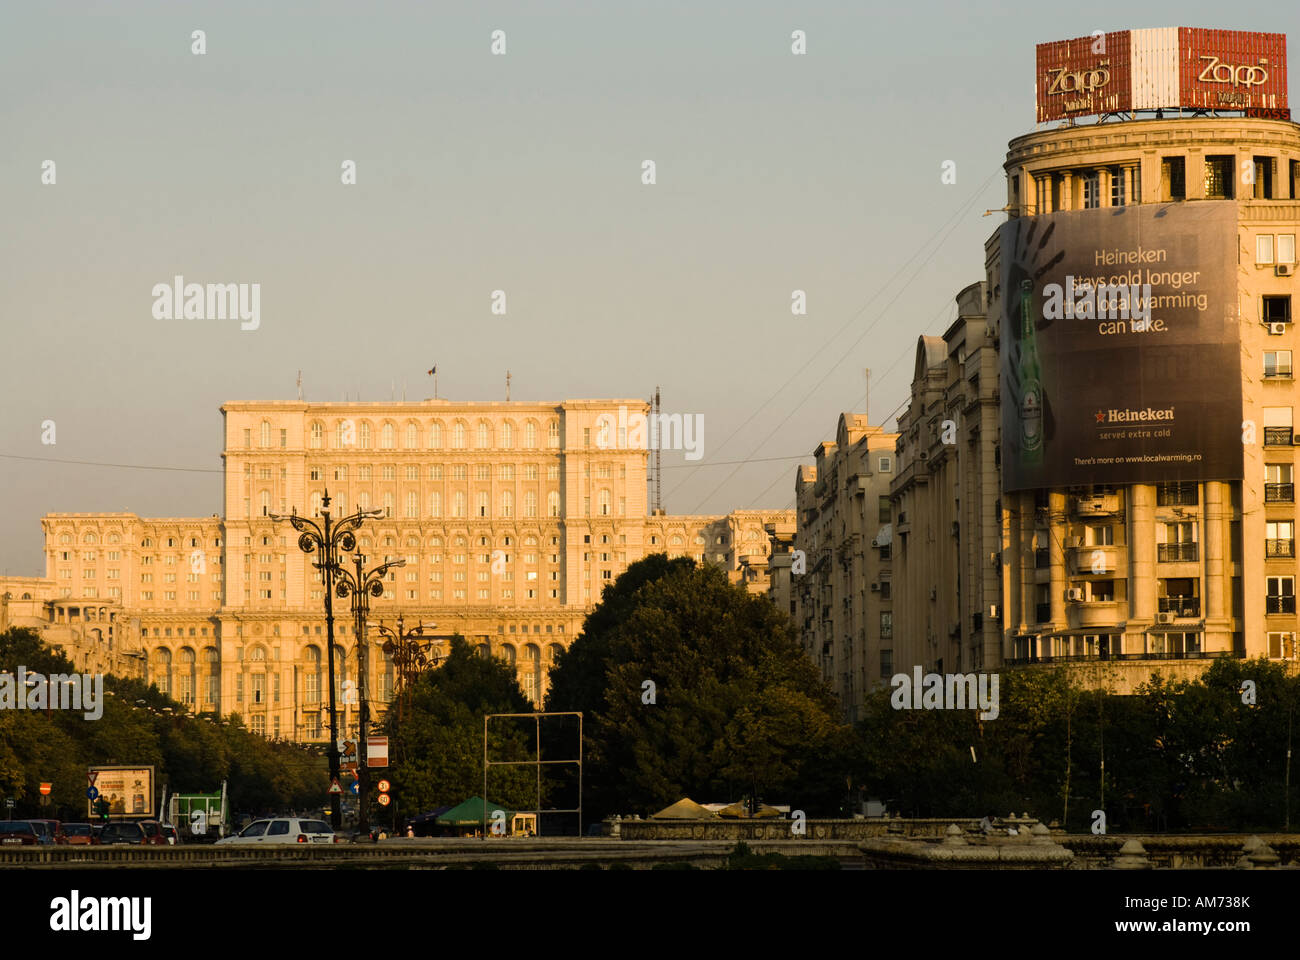 Riesige Wohnblocks und Heineken Anzeige, auf der Suche nach unten Boulevard Unirii in Richtung der Palast des Parlaments, Bukarest, Rumänien Stockfoto